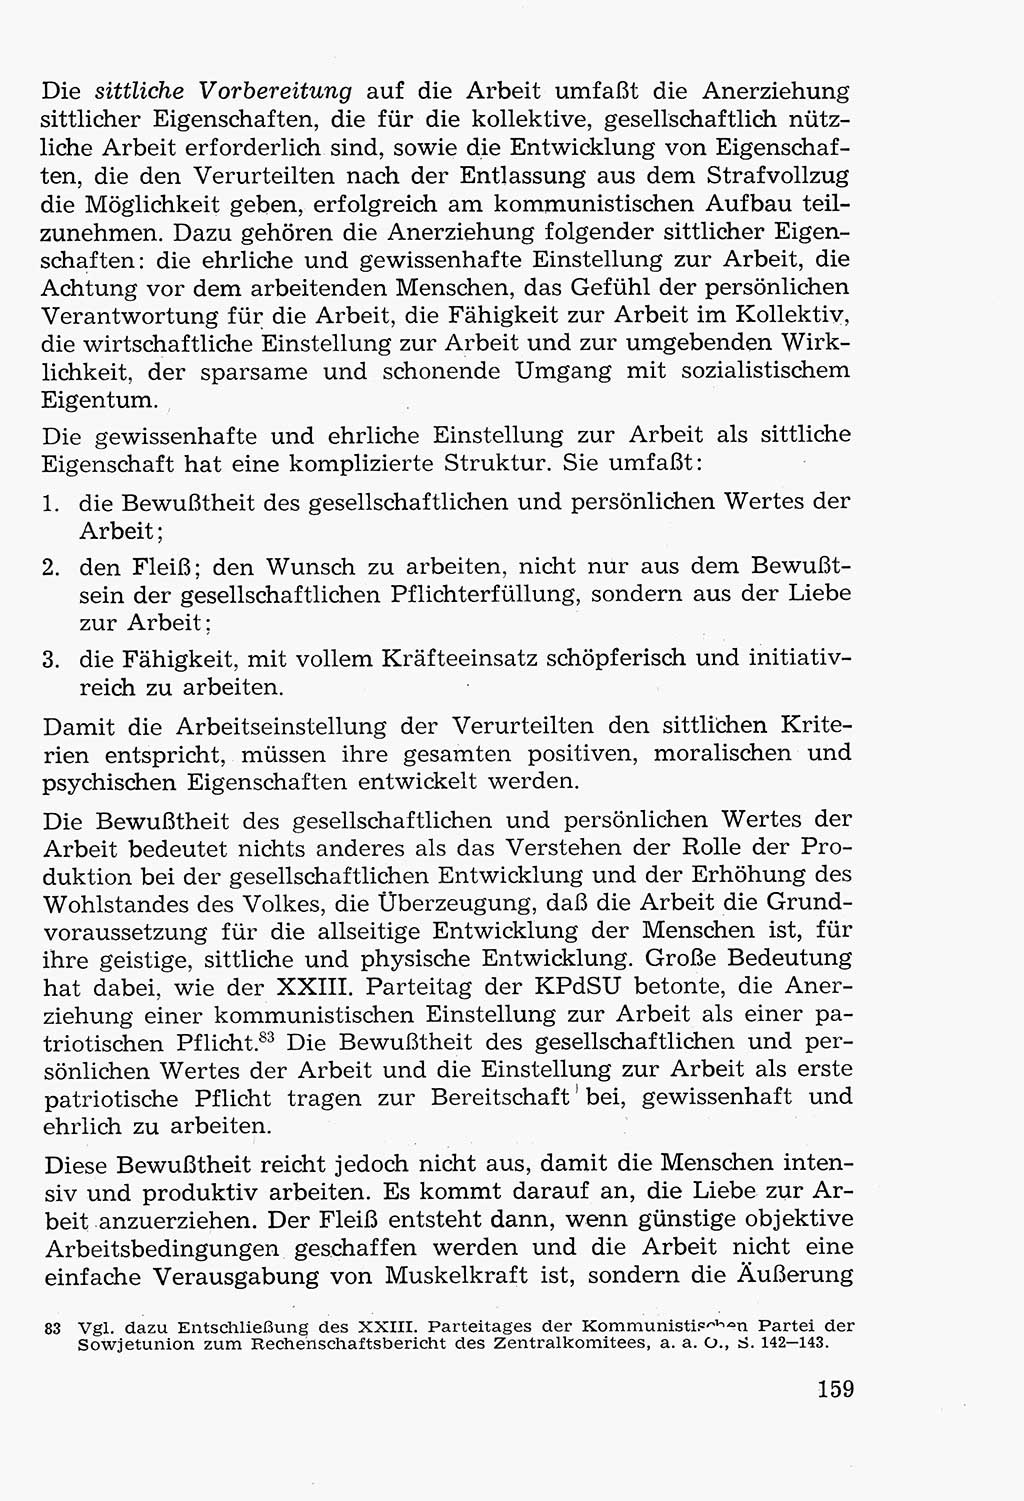 Lehrbuch der Strafvollzugspädagogik [Deutsche Demokratische Republik (DDR)] 1969, Seite 159 (Lb. SV-Pd. DDR 1969, S. 159)